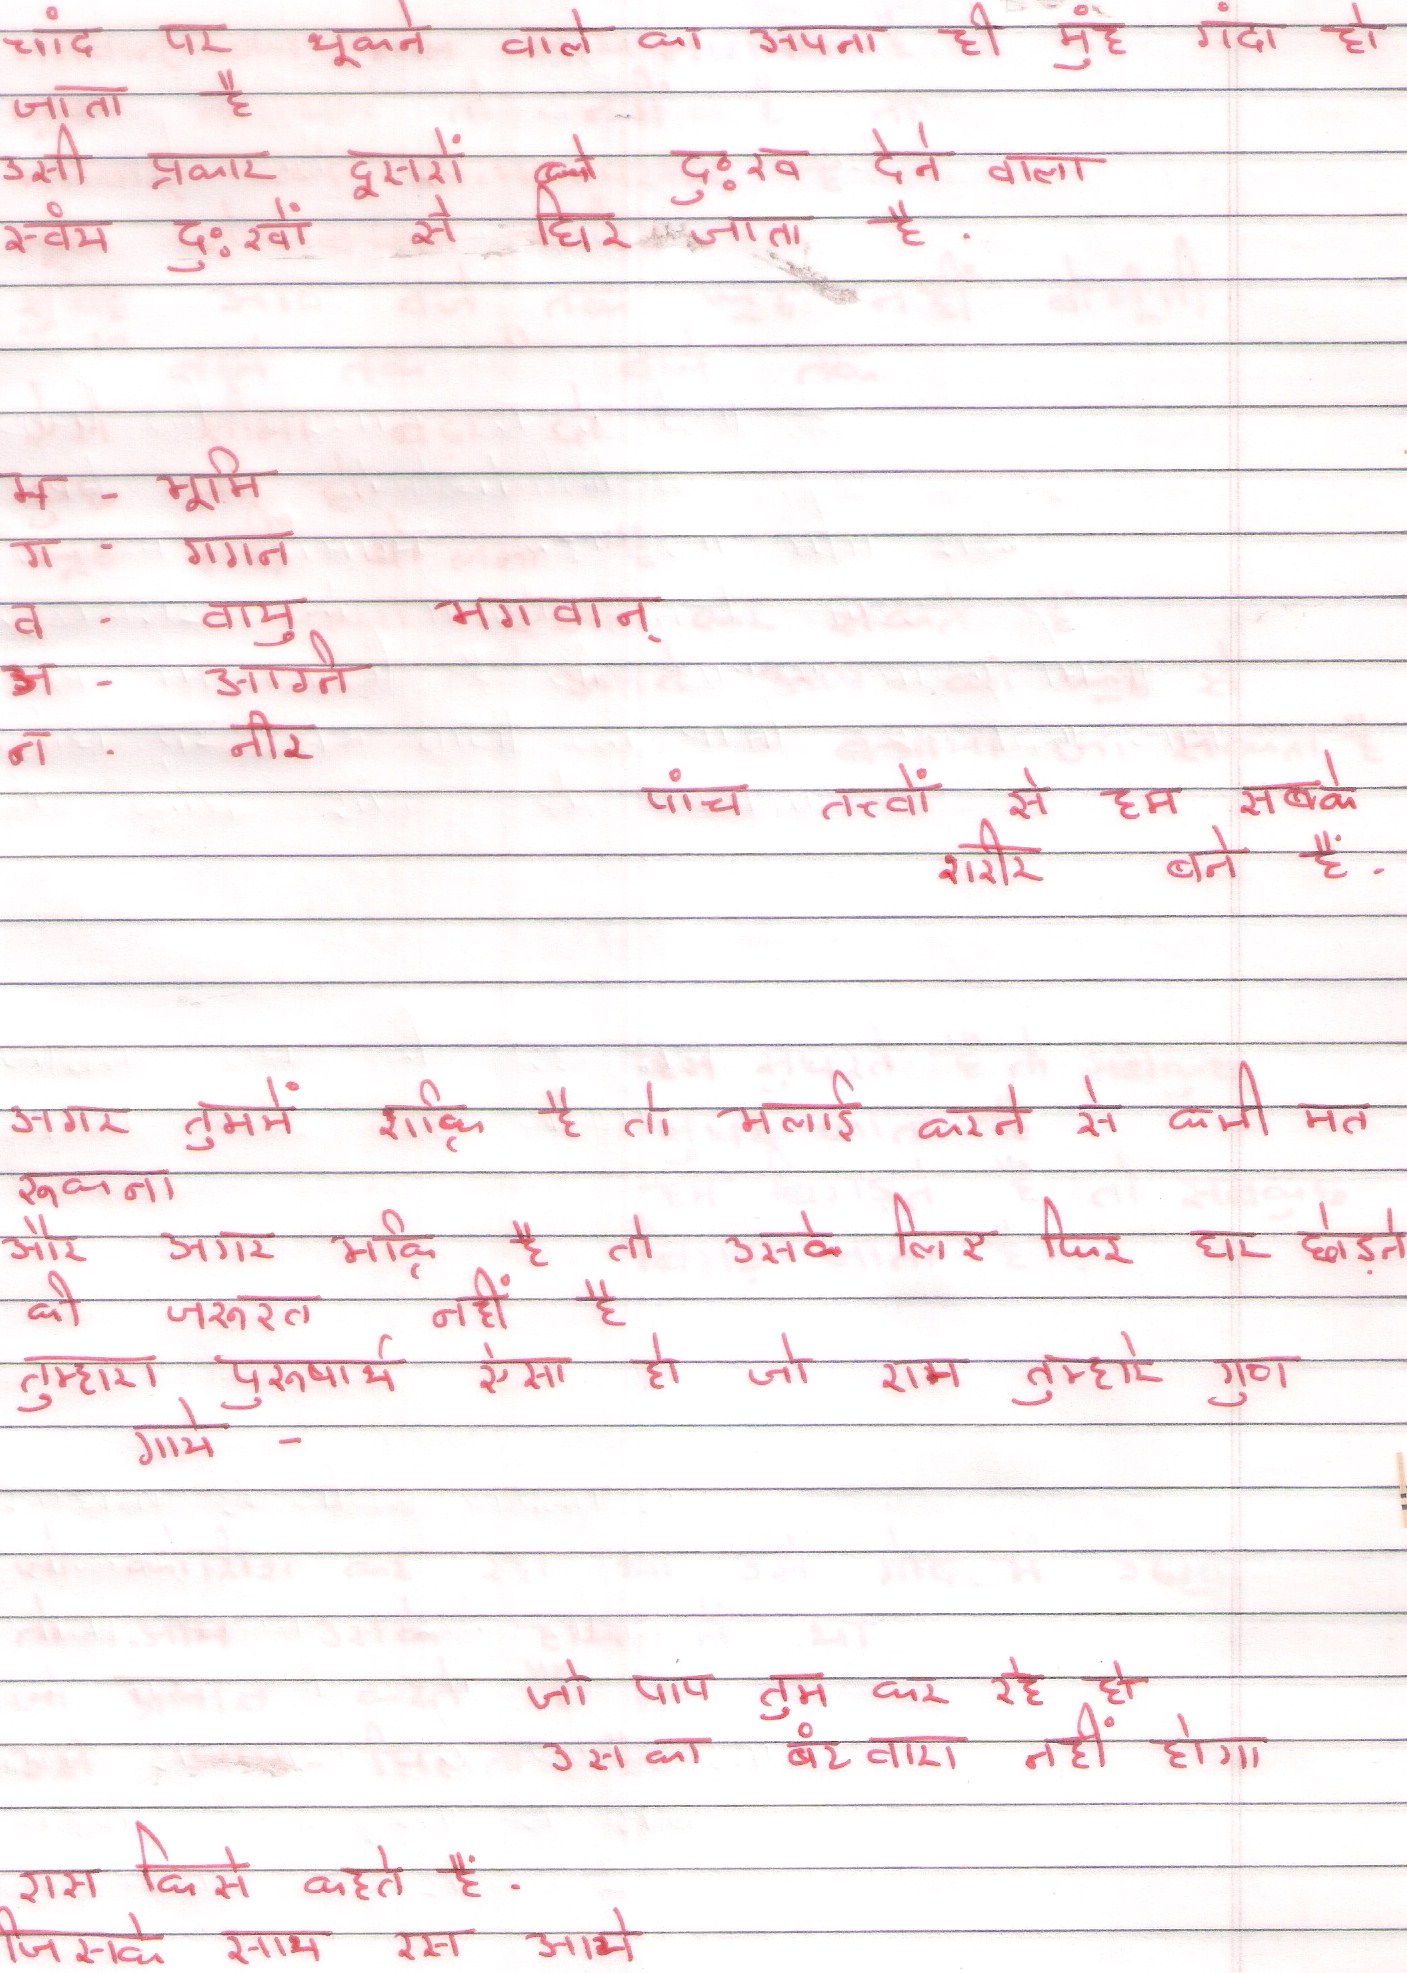 quotes meaning in hindi quotes meaning in hindi